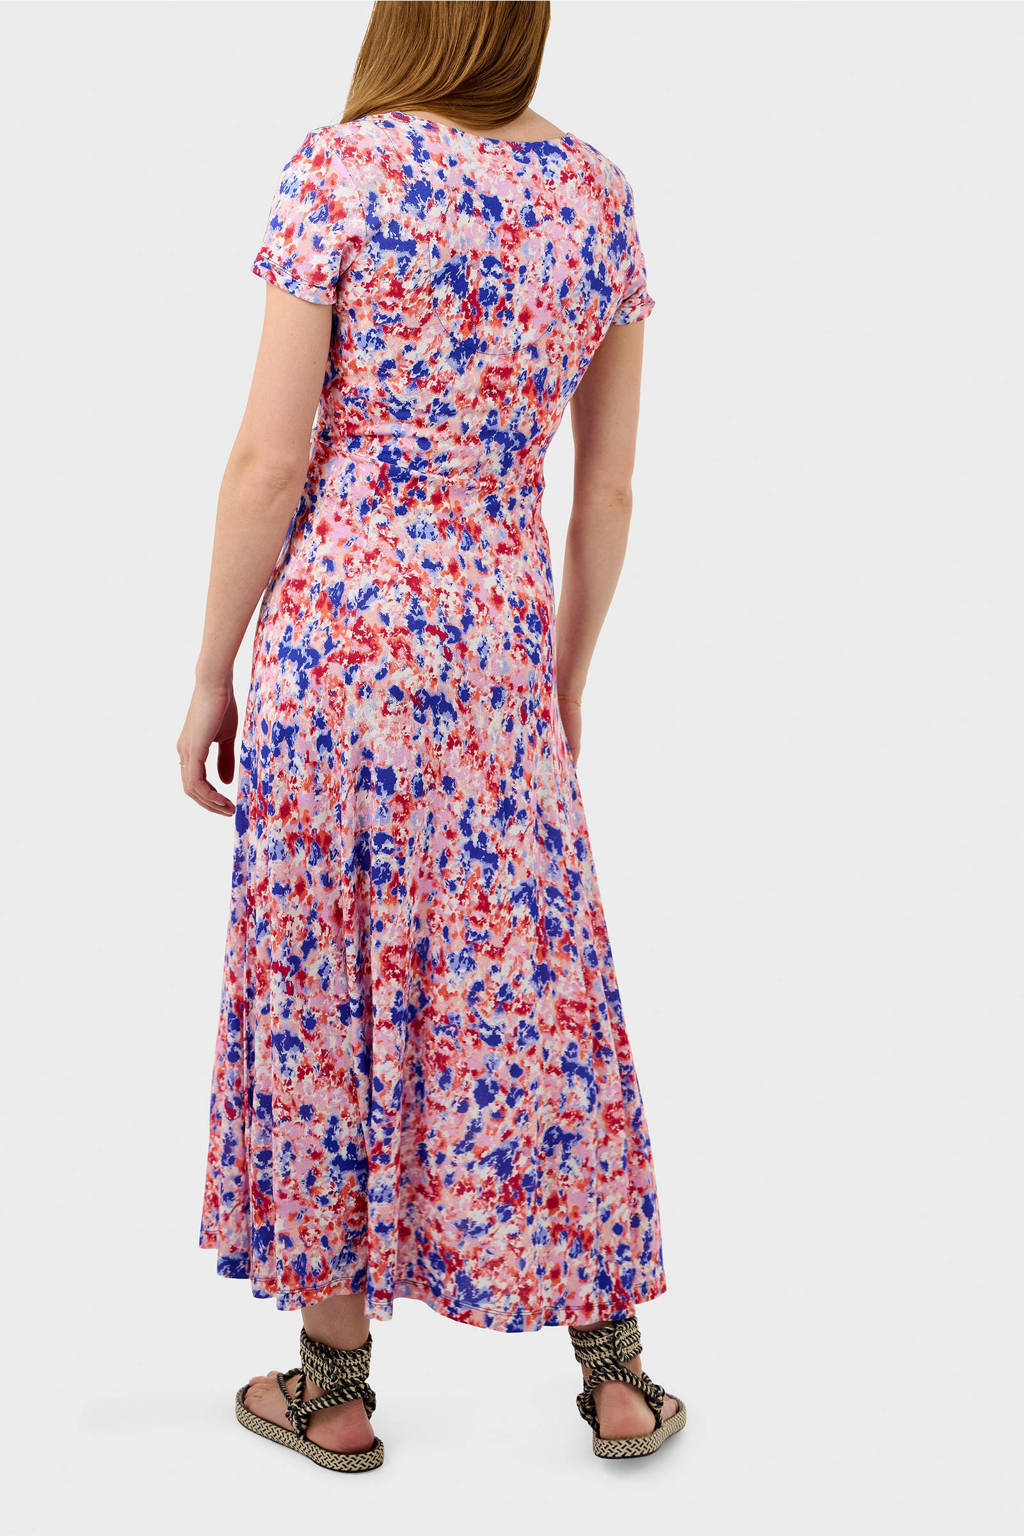 Verst Waar Opiaat Sandwich A-lijn jurk met all over print roze/blauw/rood | wehkamp